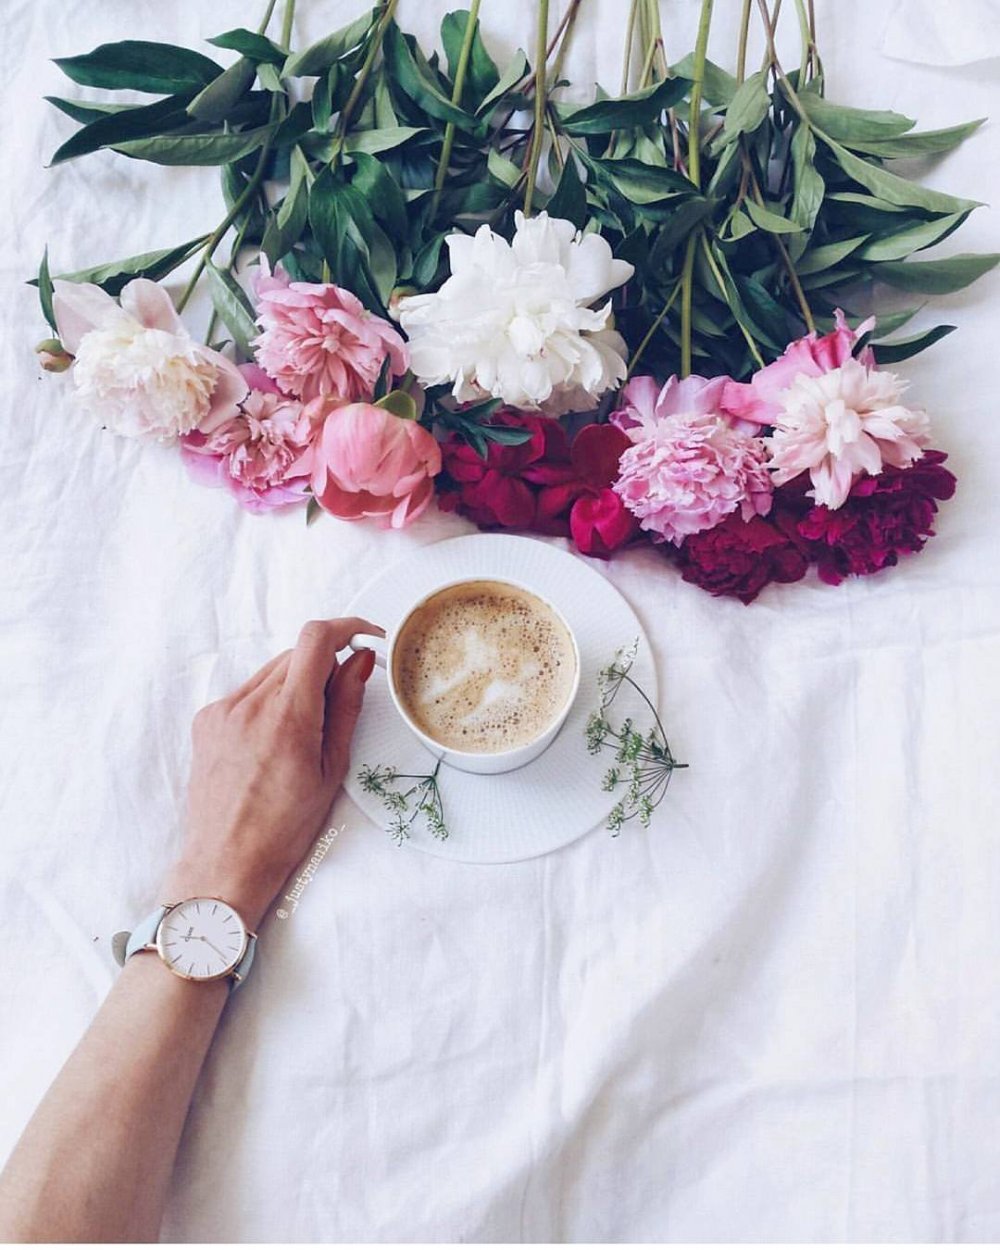 Стильные композиции кофе цветы